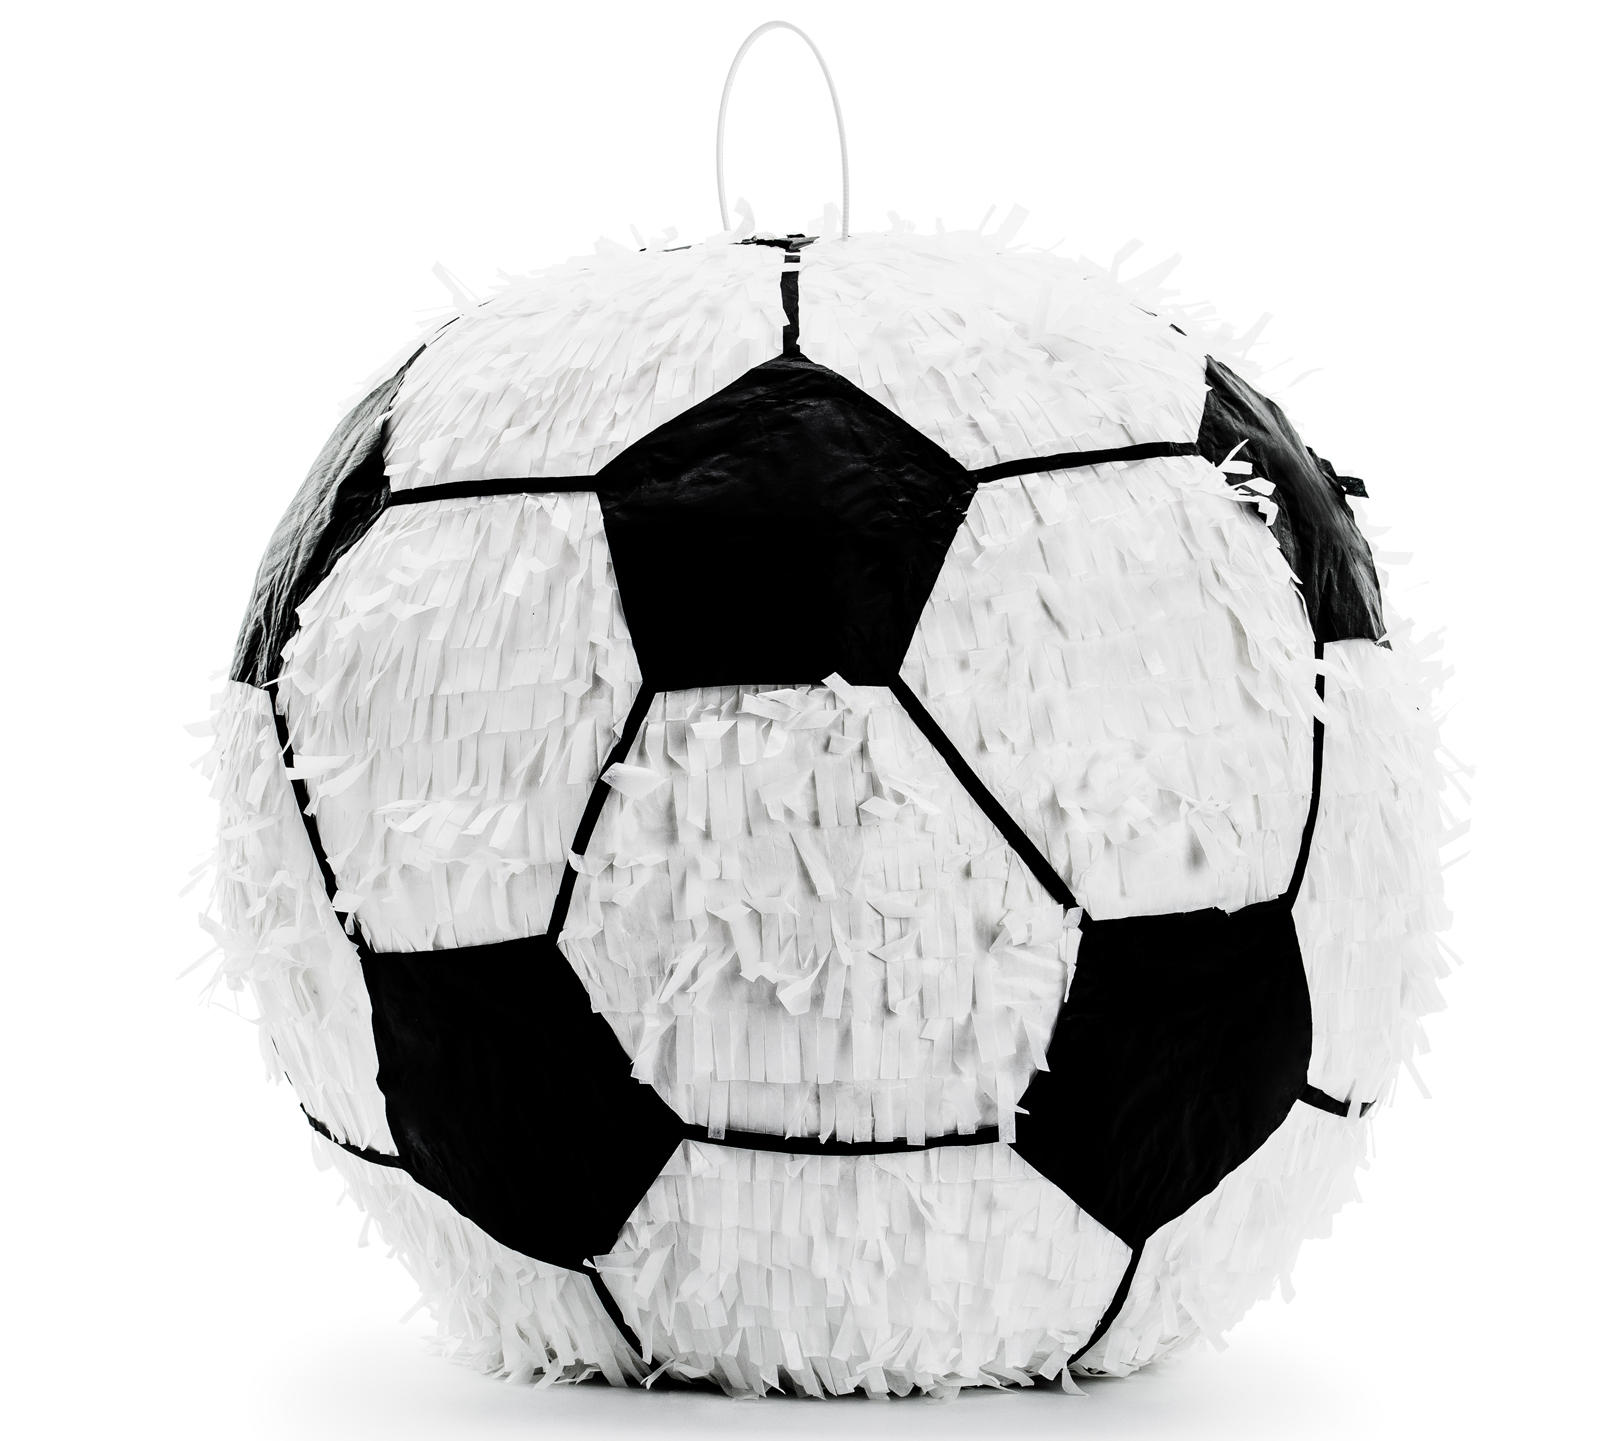 Pallone da calcio matrimoni vuoto Piñata per feste di compleanno per bambini Pallone da calcio 25 x 25 x 25 cm feste ideale da riempire con caramelle e regali Trendario Pignata 